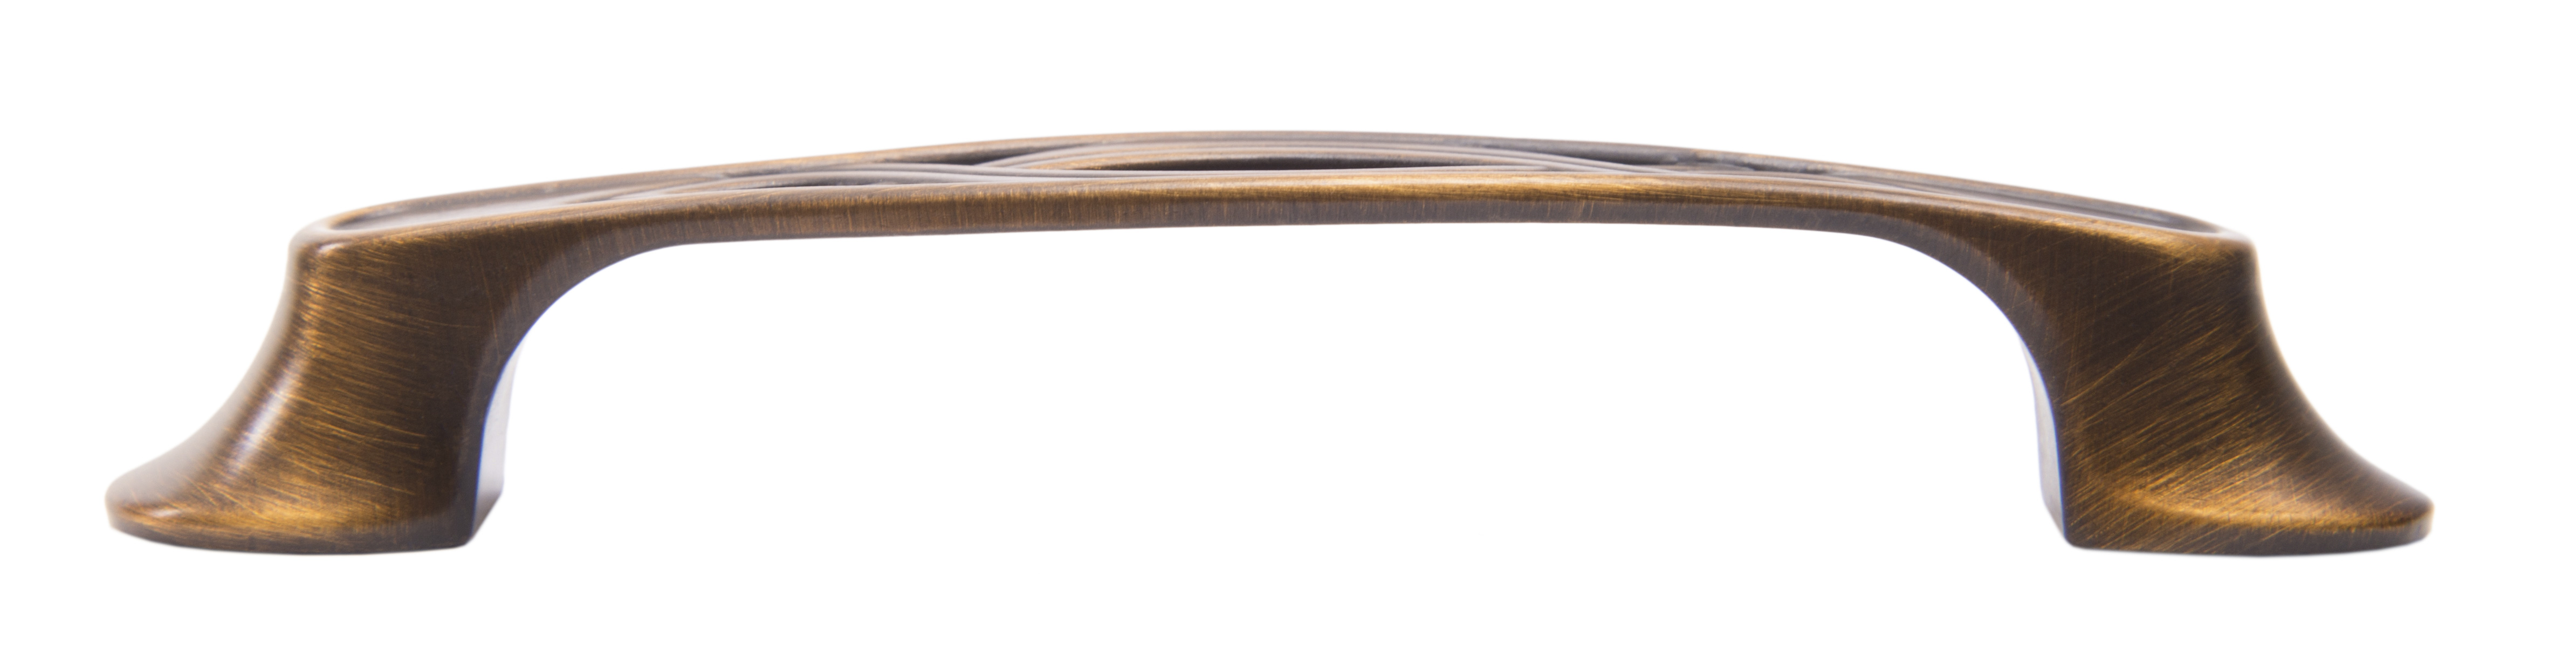 Ручка мебельная скоба 96мм старинная бронза RS407BAB.4/96 Boyard / 719742 / оптом и в розницу / мебельная фурнитура "ЛАВР"